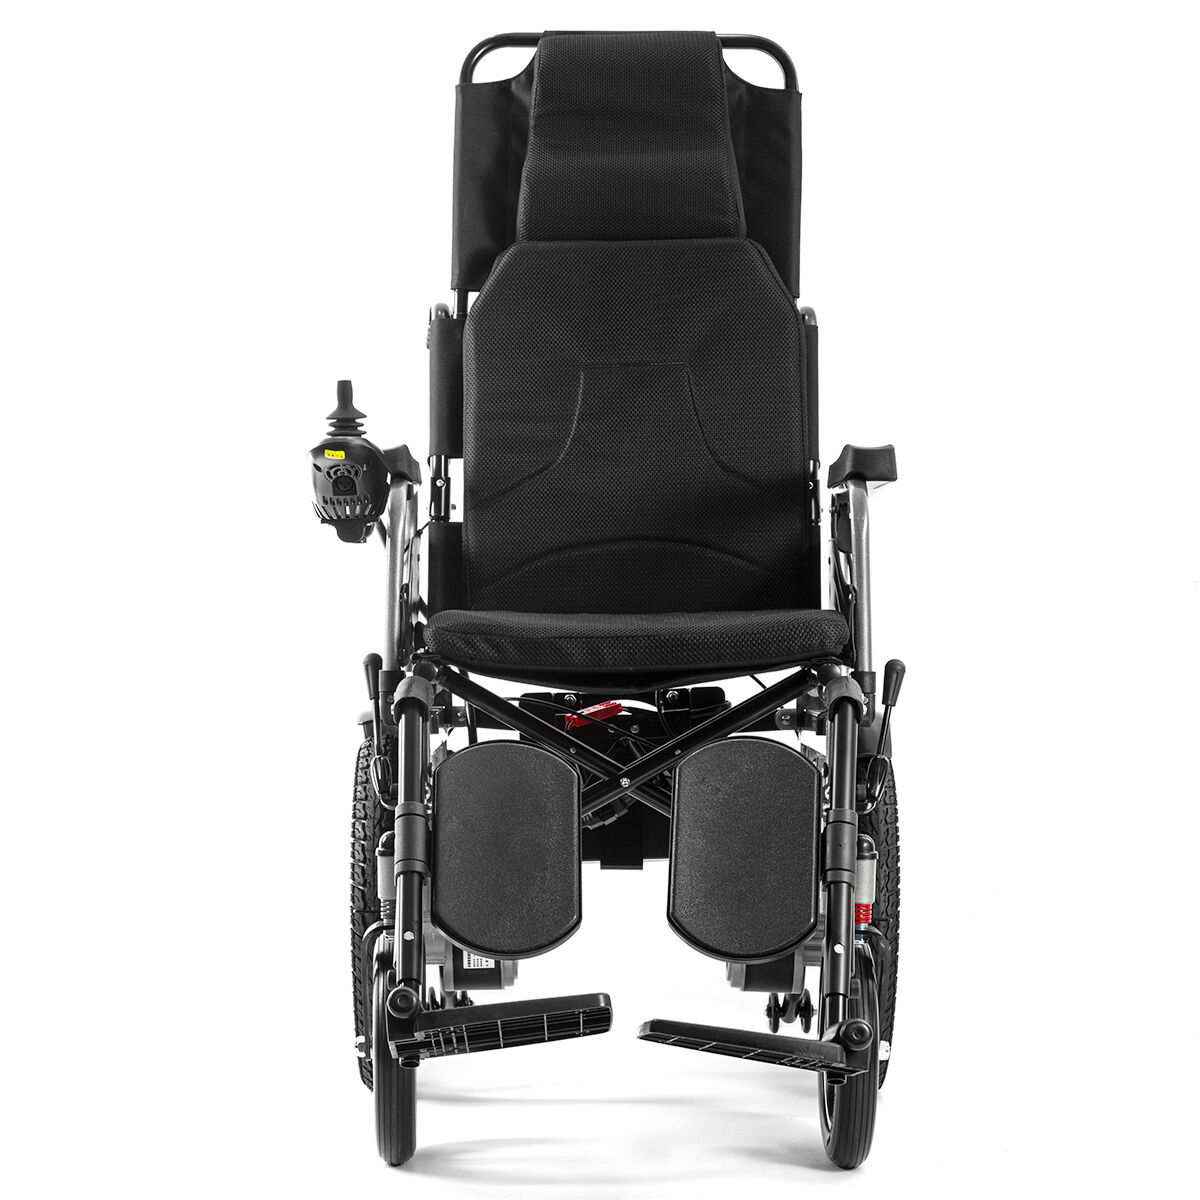 BC-ES6003A-LW 리클라이닝 전동 휠체어 전지형 접이식